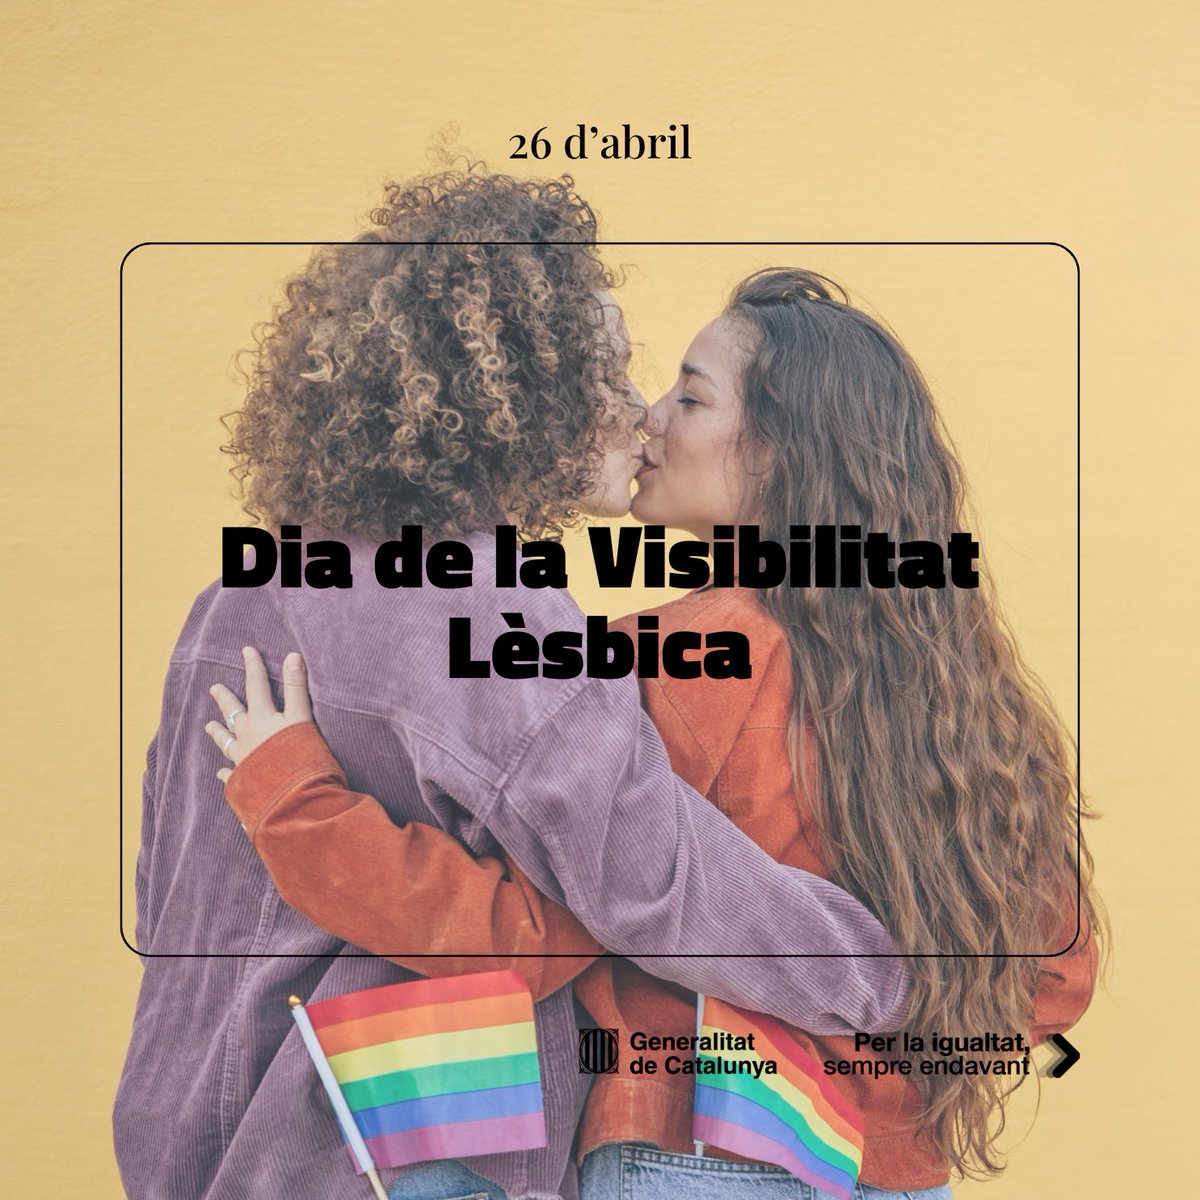 Som moltes, diverses i som a tot arreu. Les dones lesbianes volem ser visibles els 365 dies de l'any 🏳️‍🌈 Per una vida lliure i plena, sense prejudicis ni discriminacions!